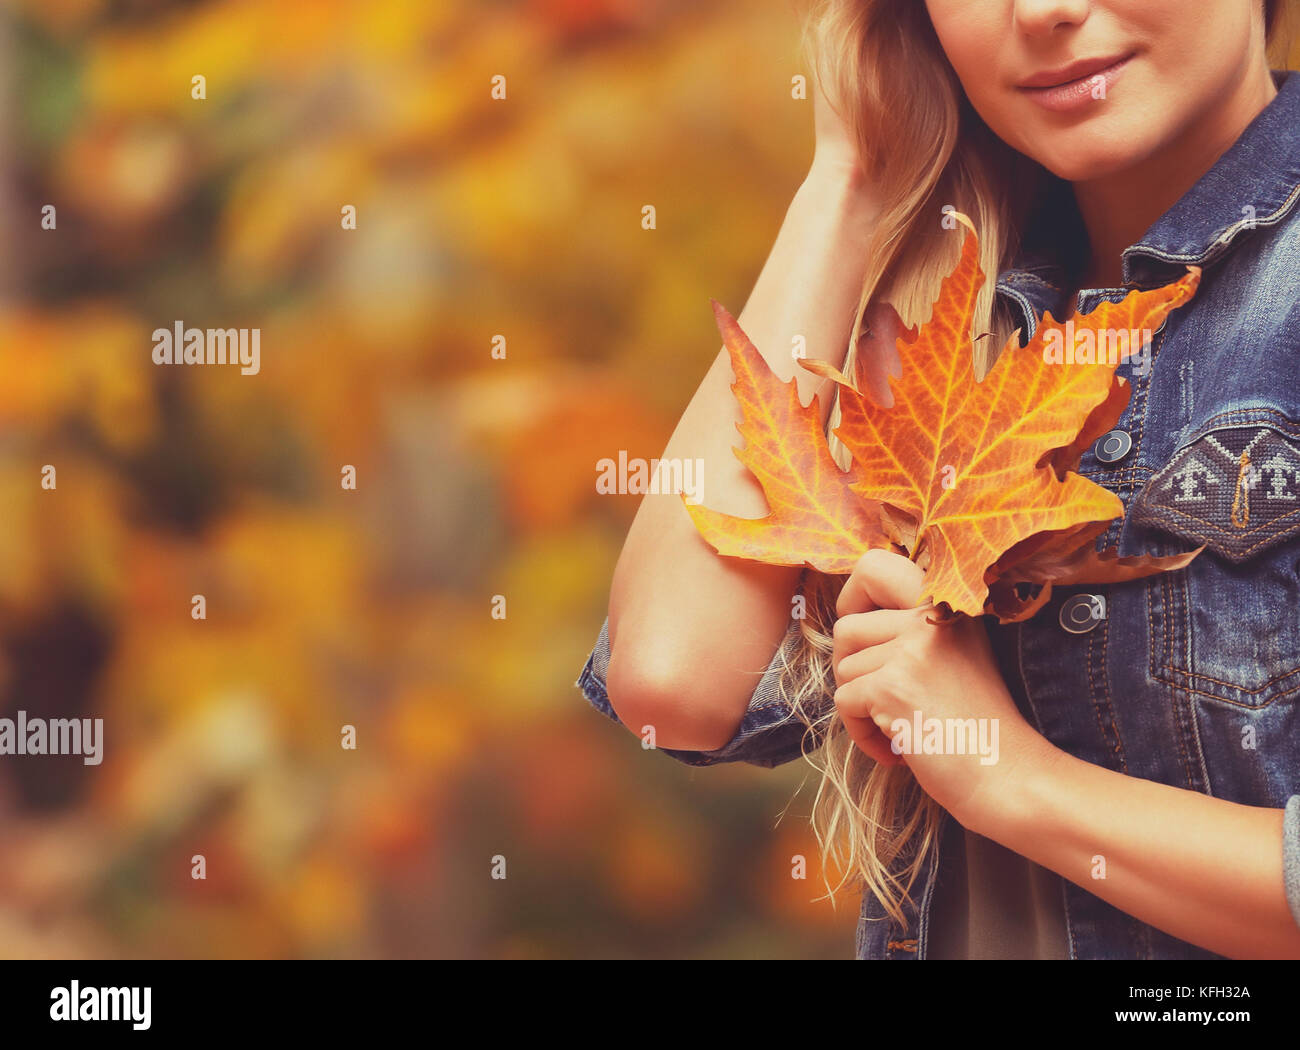 Nette weibliche über herbstliches Laub Hintergrund mit schönen trockenen Maple Leaf in der Hand, Herbstferien Konzept Stockfoto